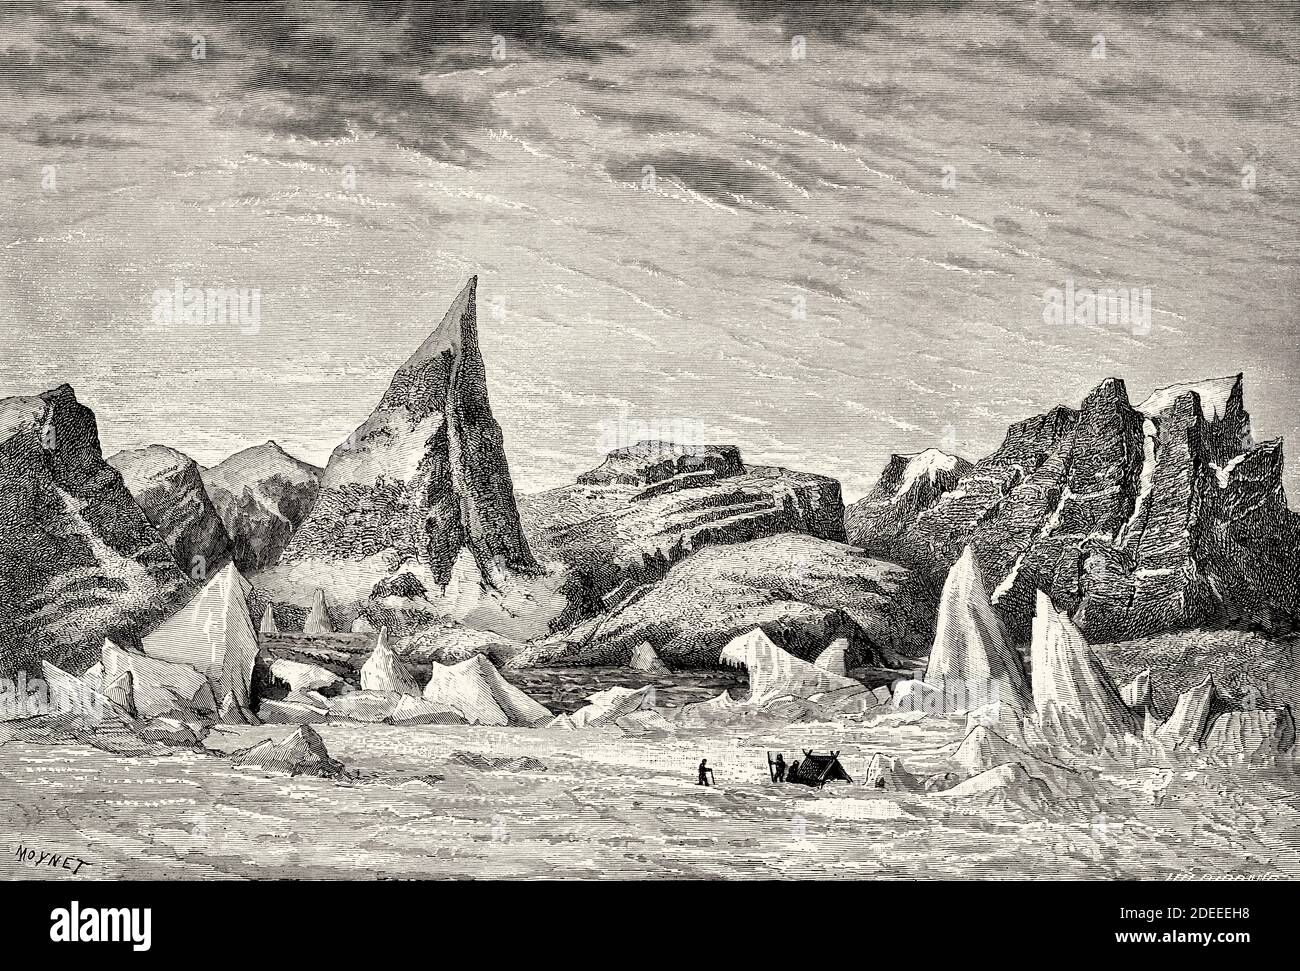 Mitglieder der zweiten Nordpolarexpedition auf der King William Insel in der Kitikmeot Region von Nunavut, wo sie Teil des kanadischen arktischen Archipels ist. Alte eingravierte Illustration des 19. Jahrhunderts. Zweite deutsche Nordpolarexpedition 1869 von El Mundo en La Mano 1879 Stockfoto